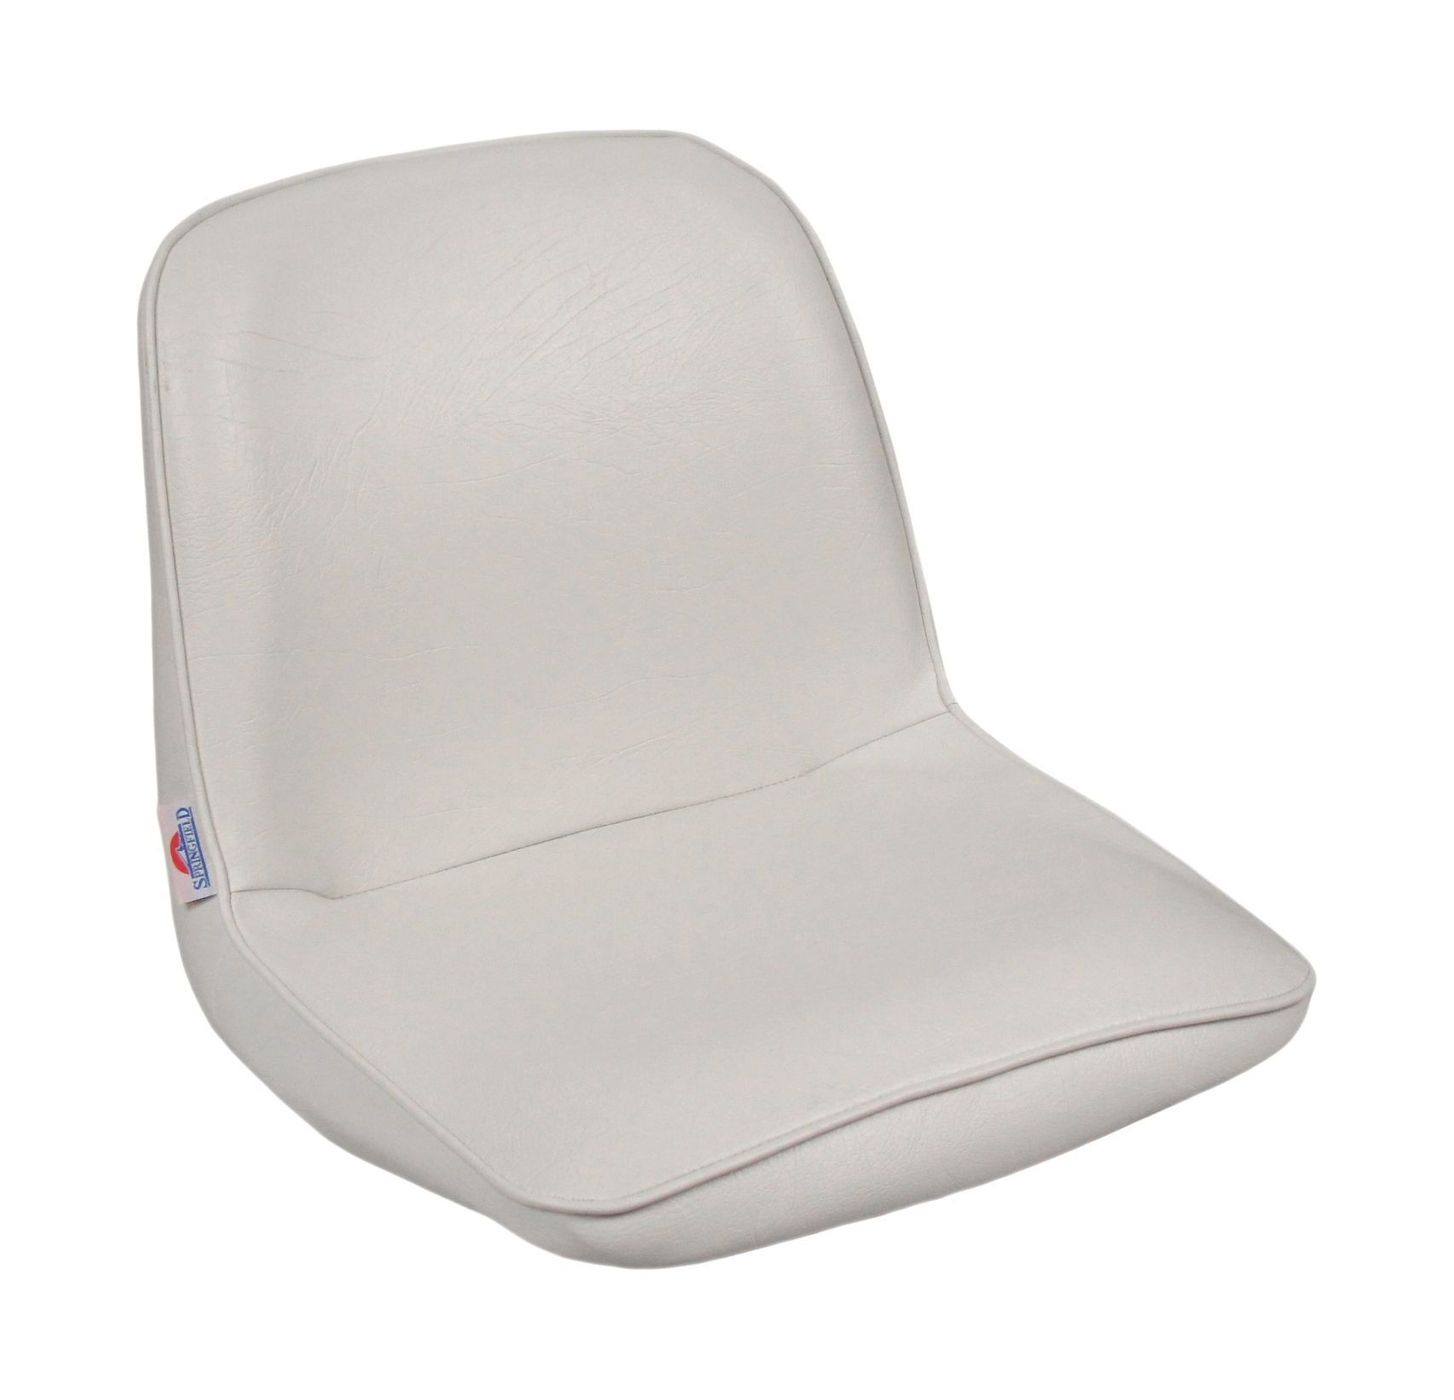 Кресло FIRST MATE мягкое, материал белый винил 1001006C кресло admiral мягкое материал винил 1061420990